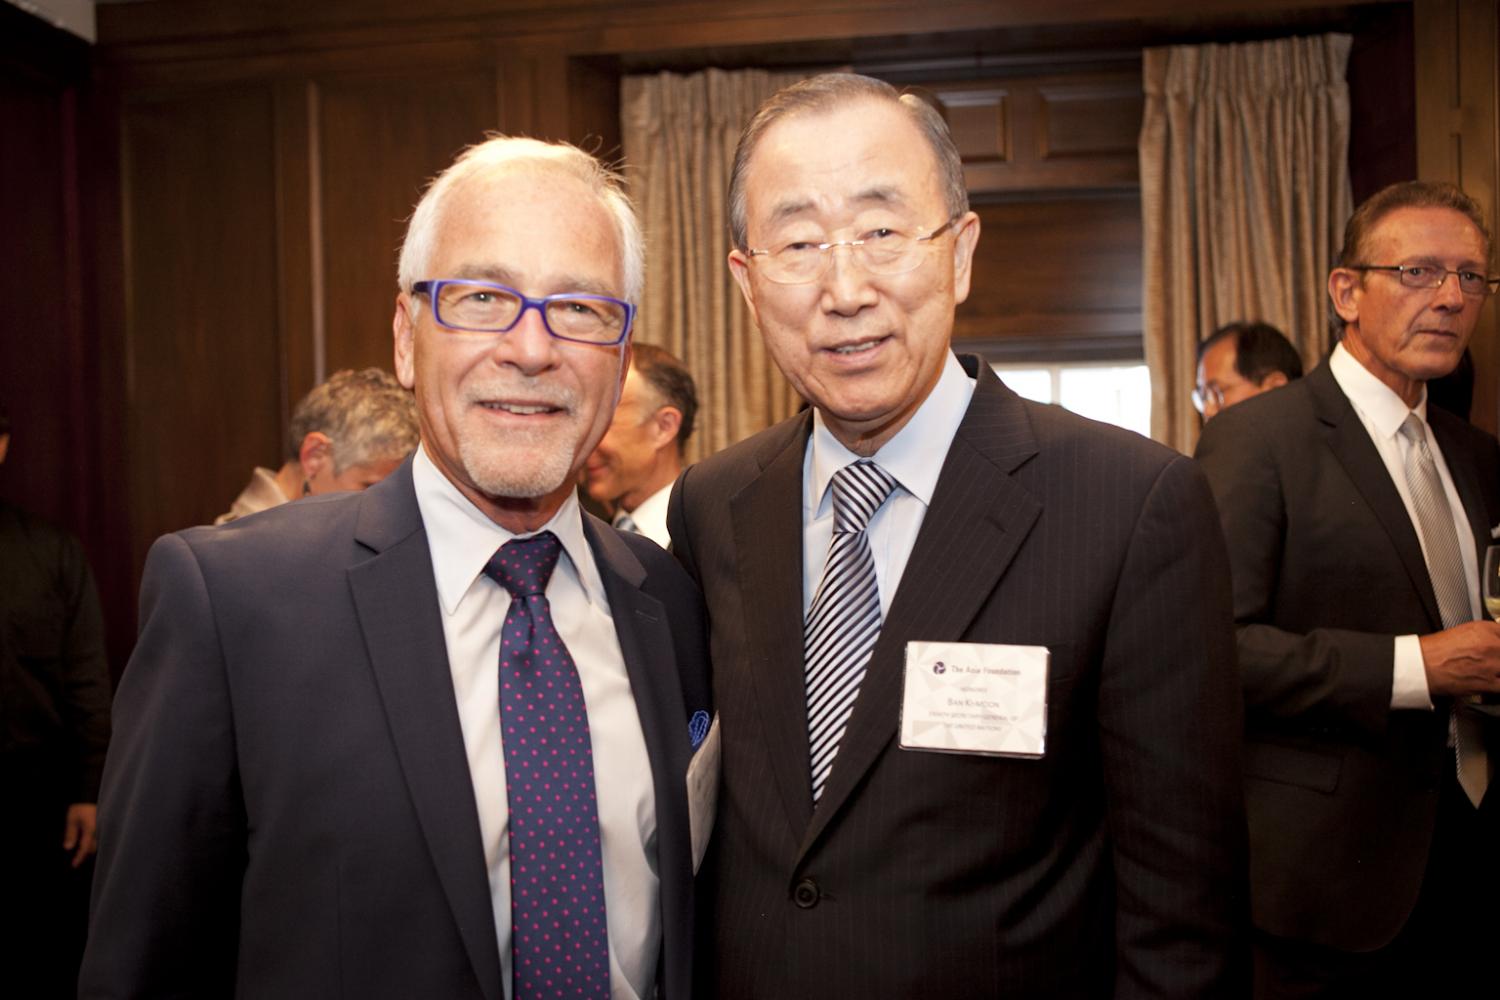 Tim Kochis and Ban Ki-moon